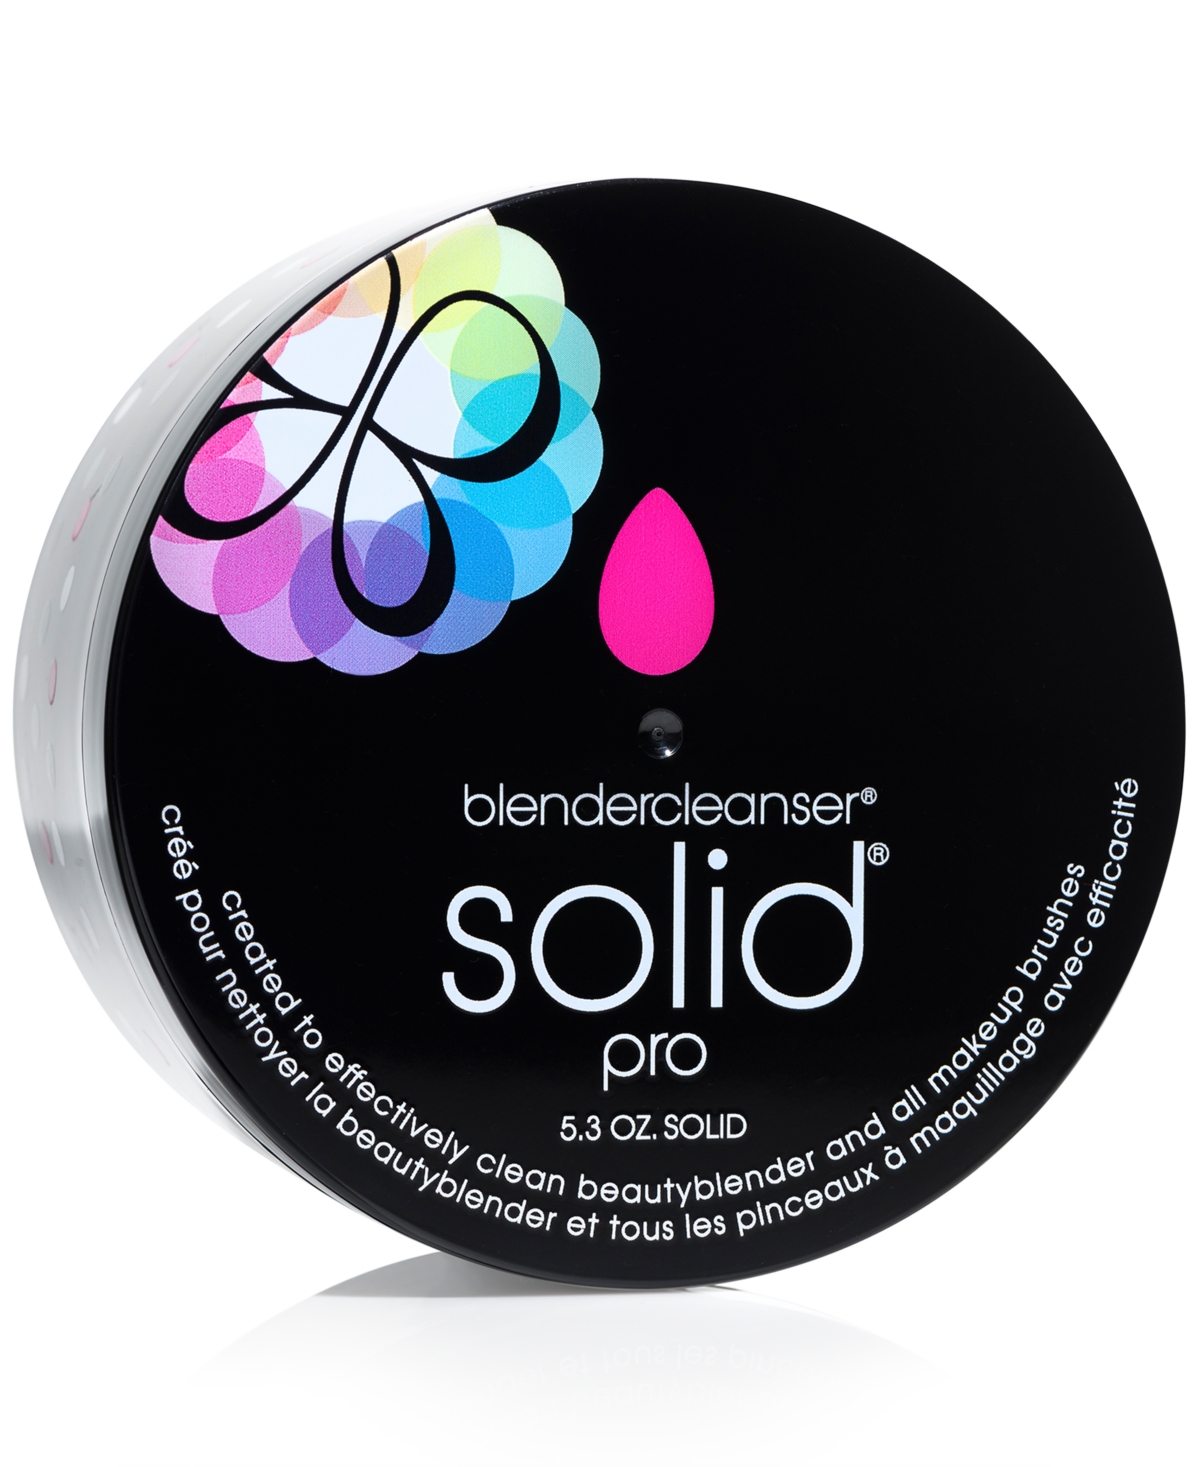 beautyblender Blendercleanser Solid Pro